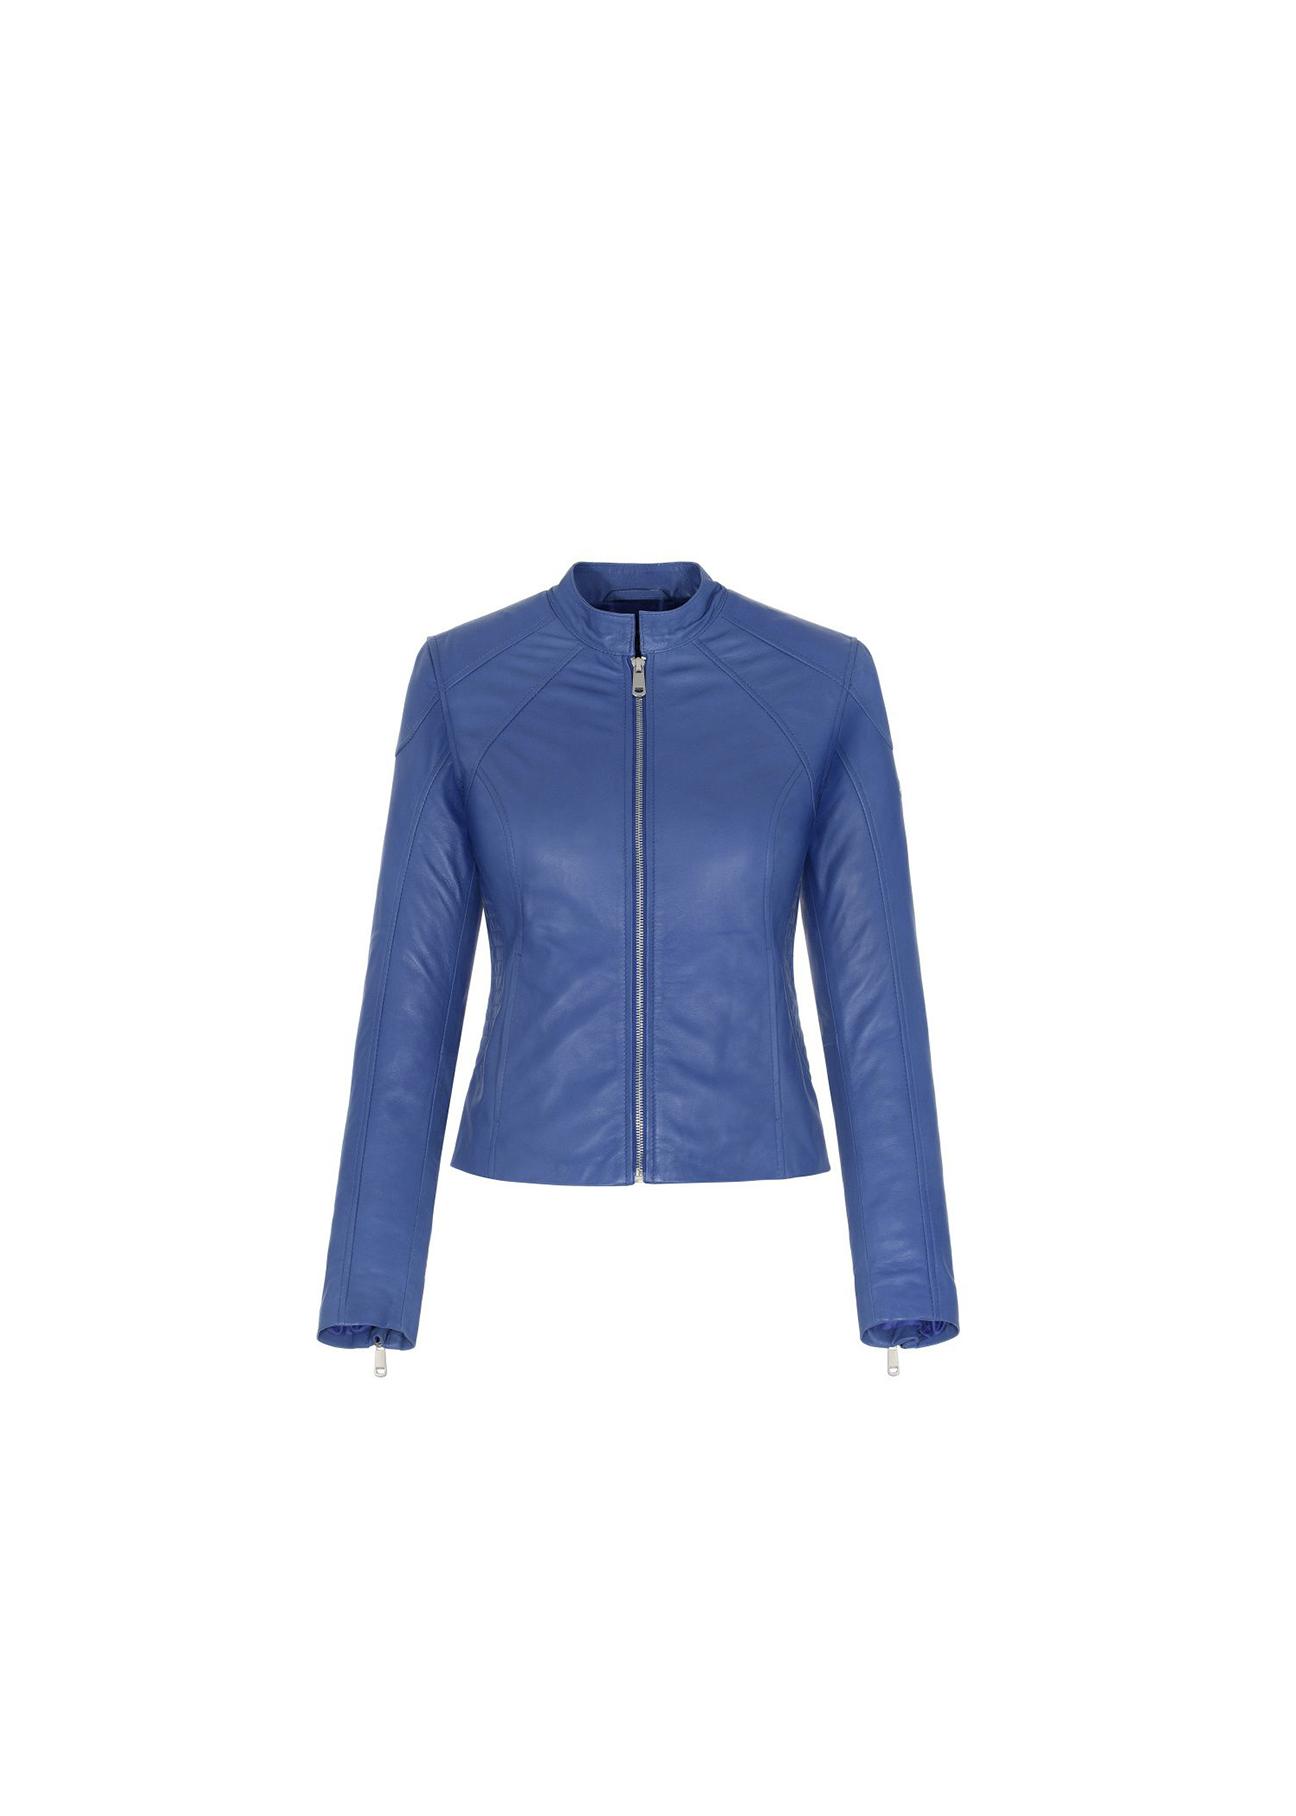 Taliowana niebieska kurtka skórzana damska KURDS-0244-5575(W20)